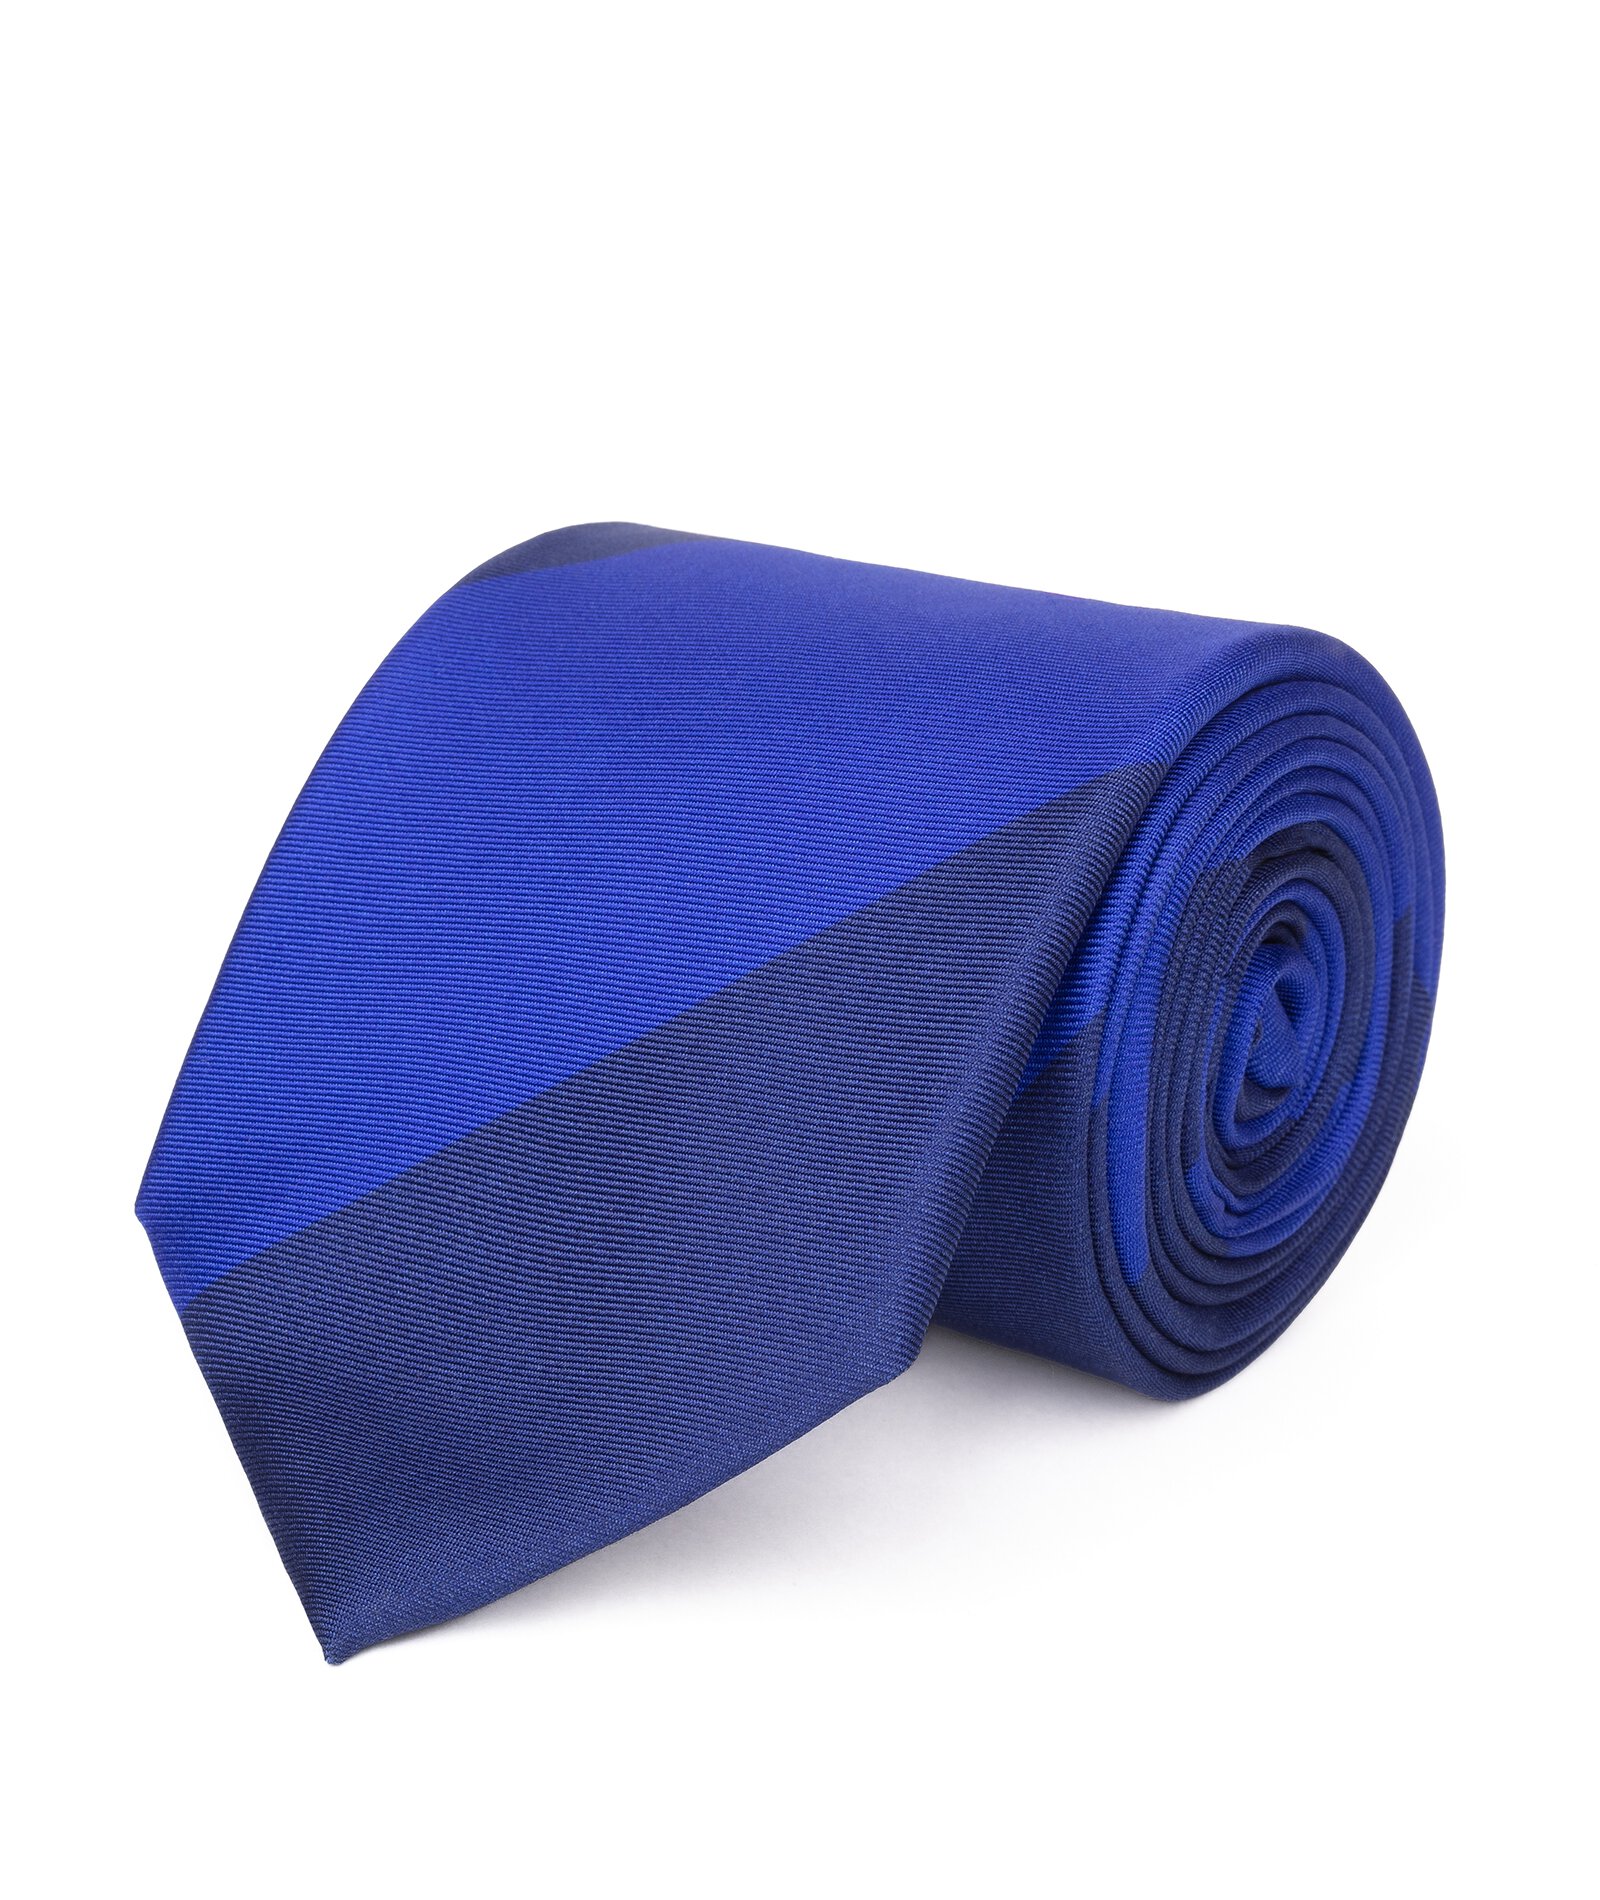 Image of Cravatta su misura, Lanieri, Blu e Blu elettrico Regimental in twill di Seta, Quattro Stagioni | Lanieri